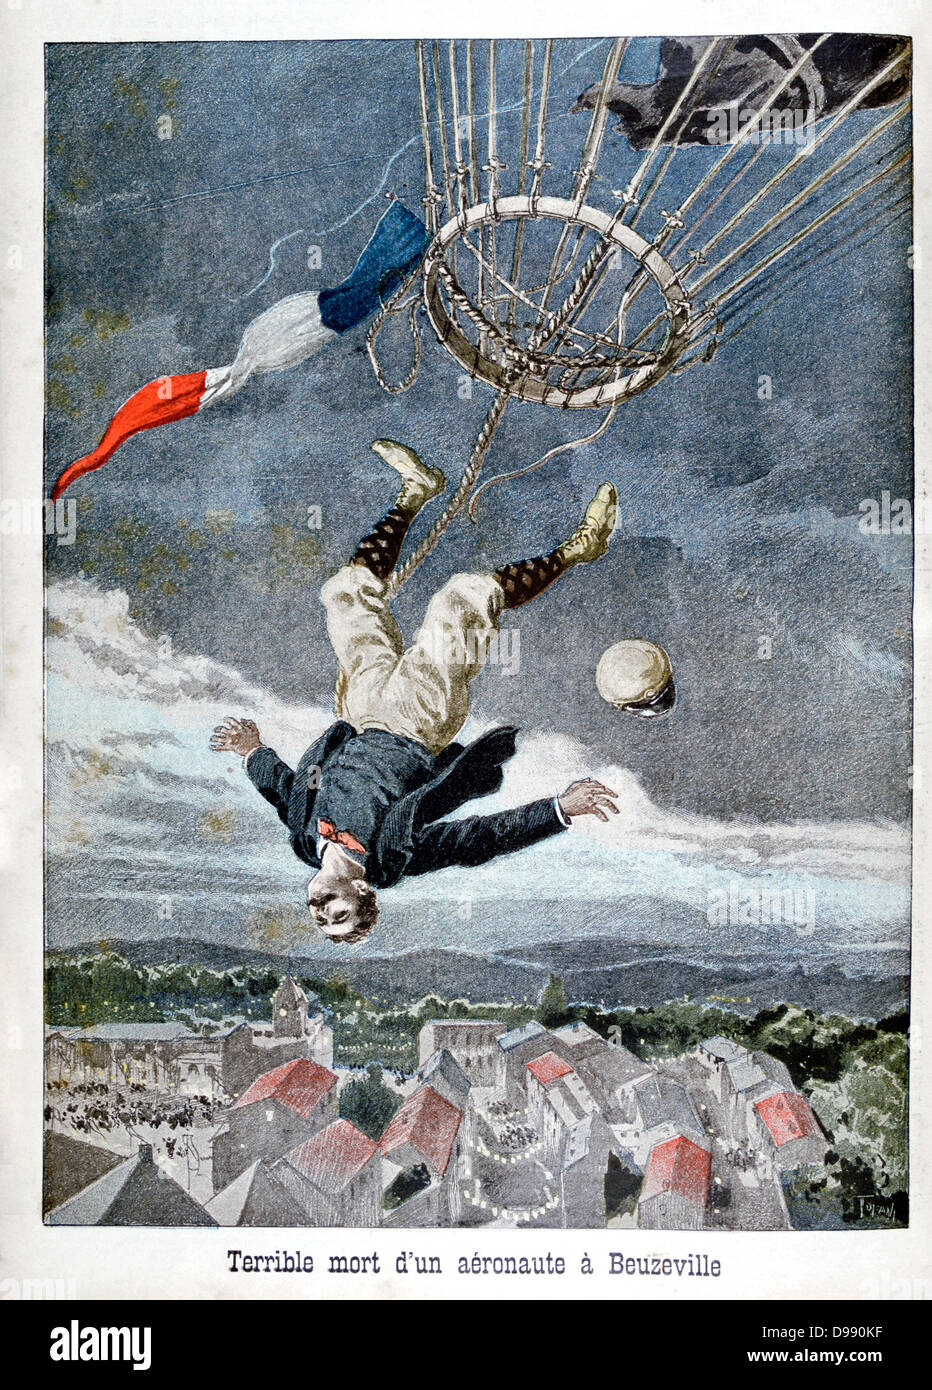 Un aéronaute français tomber à sa mort d'un ballon plus de Beuzeville, France. À partir de 'Le Petit Journal' 30 juin 1899. Accident de Montgolfière Aviation aéronautique Banque D'Images